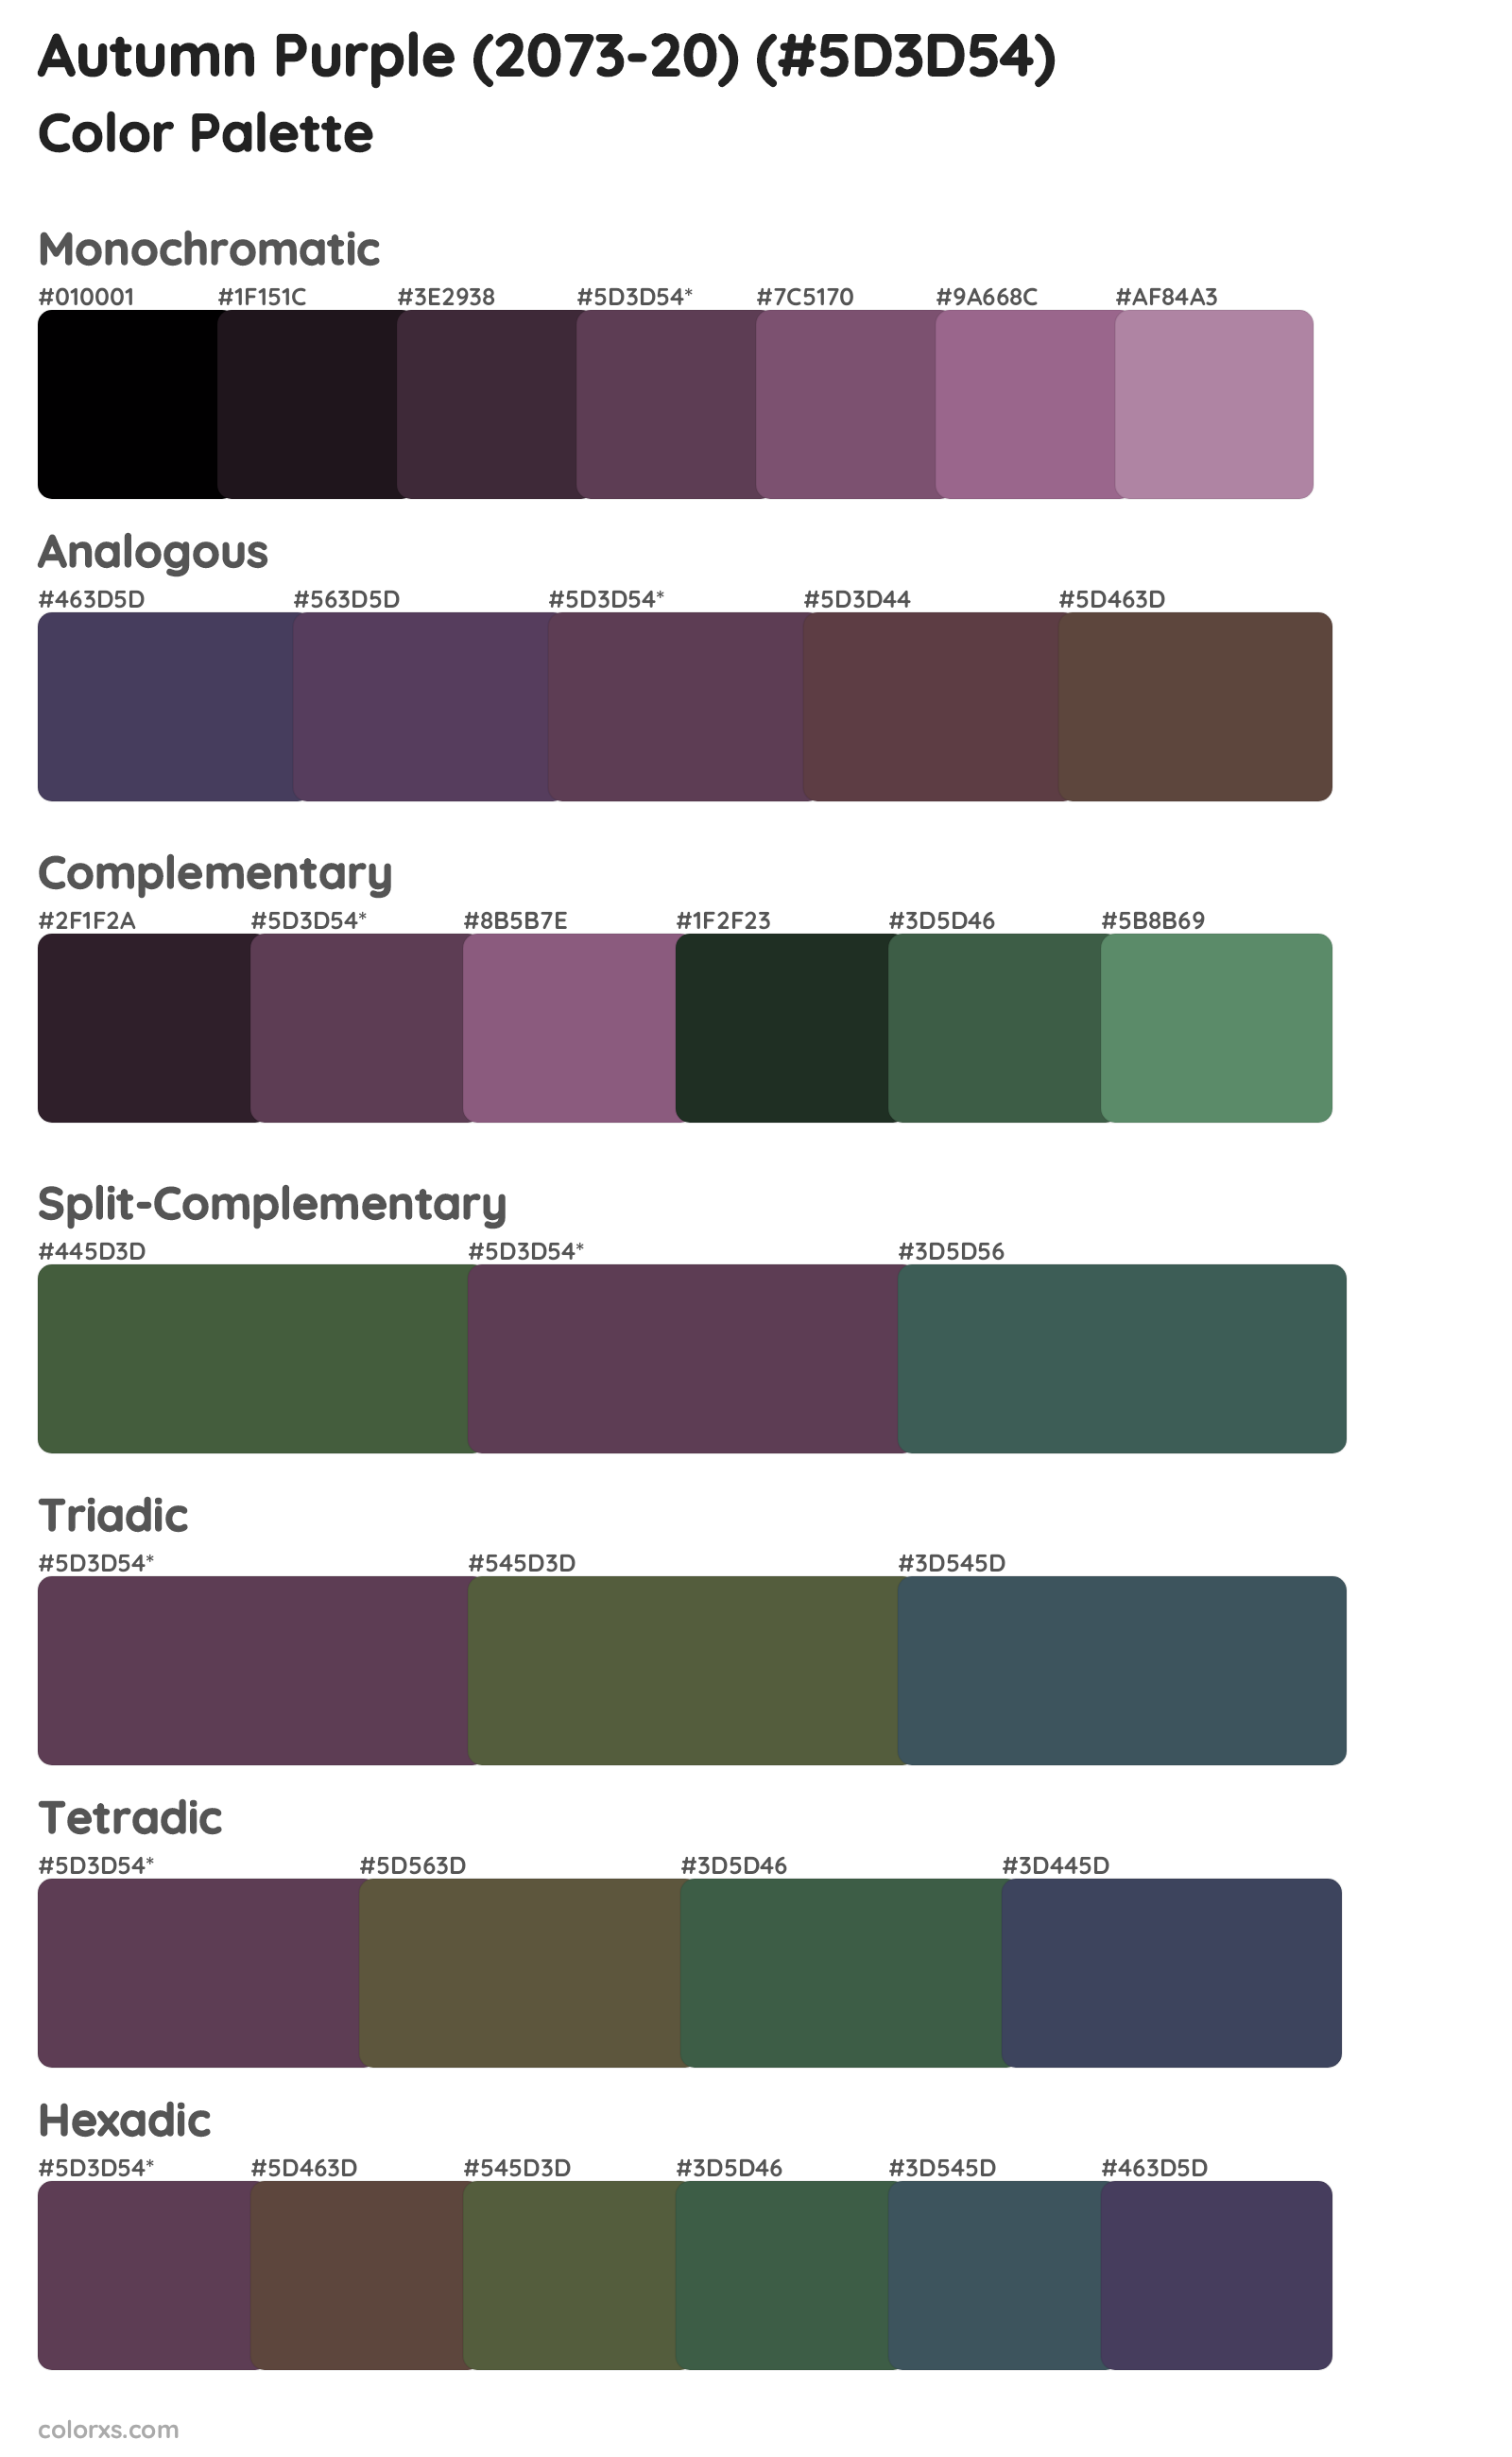 Autumn Purple (2073-20) Color Scheme Palettes